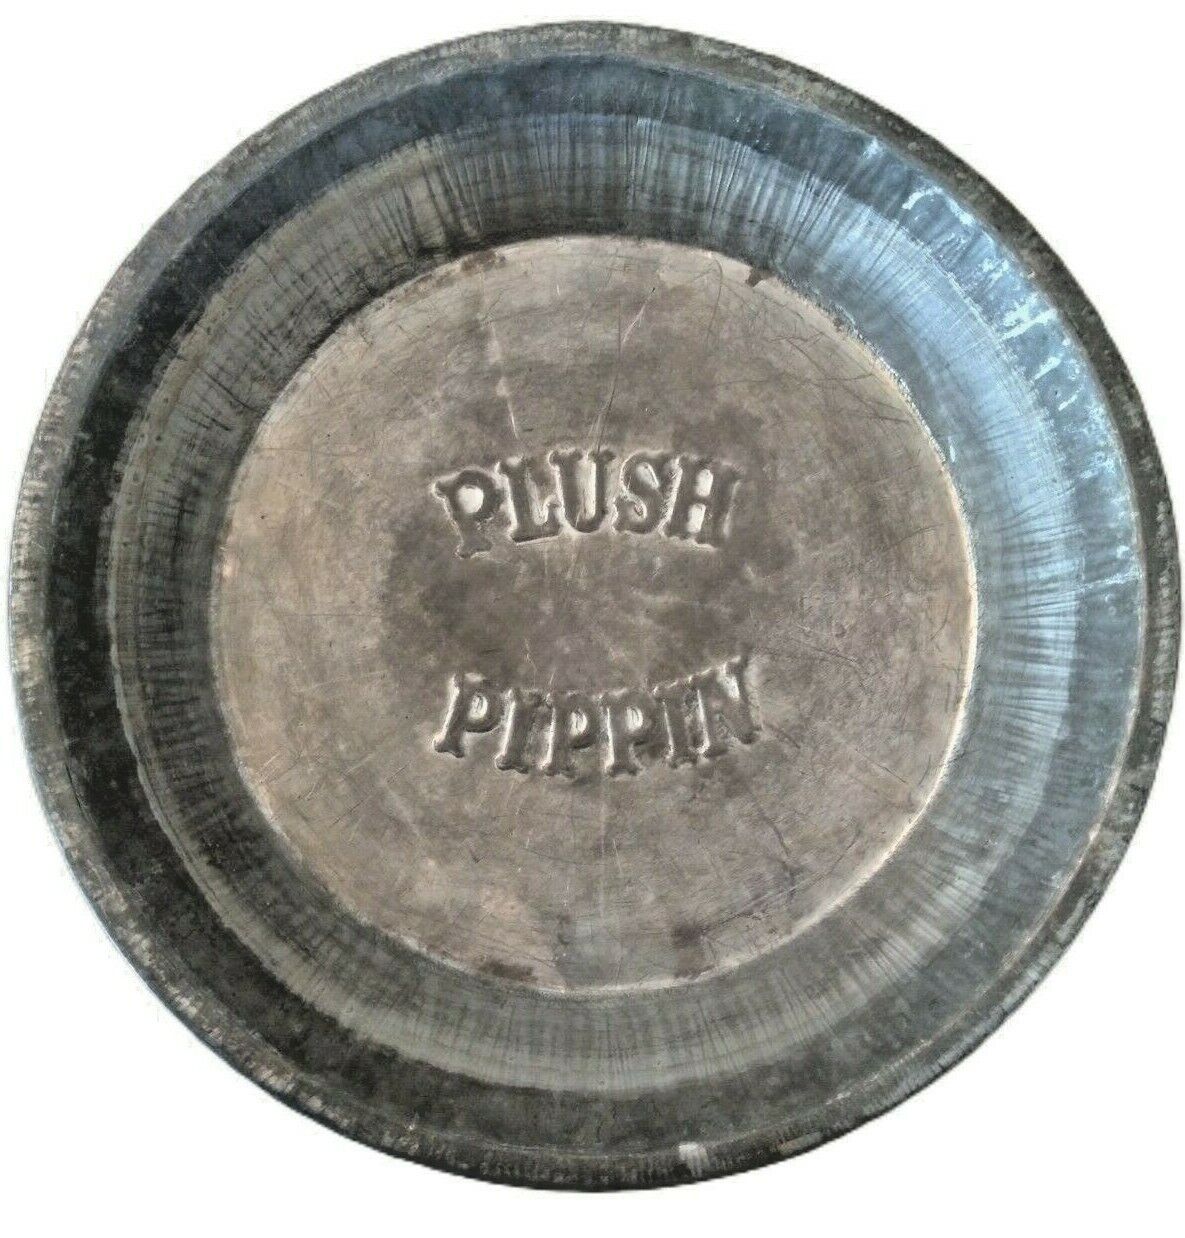 Plush Pippin Aluminum Pie Pan 9” Vintage Bakeware Kitchenware Farmhouse Decor